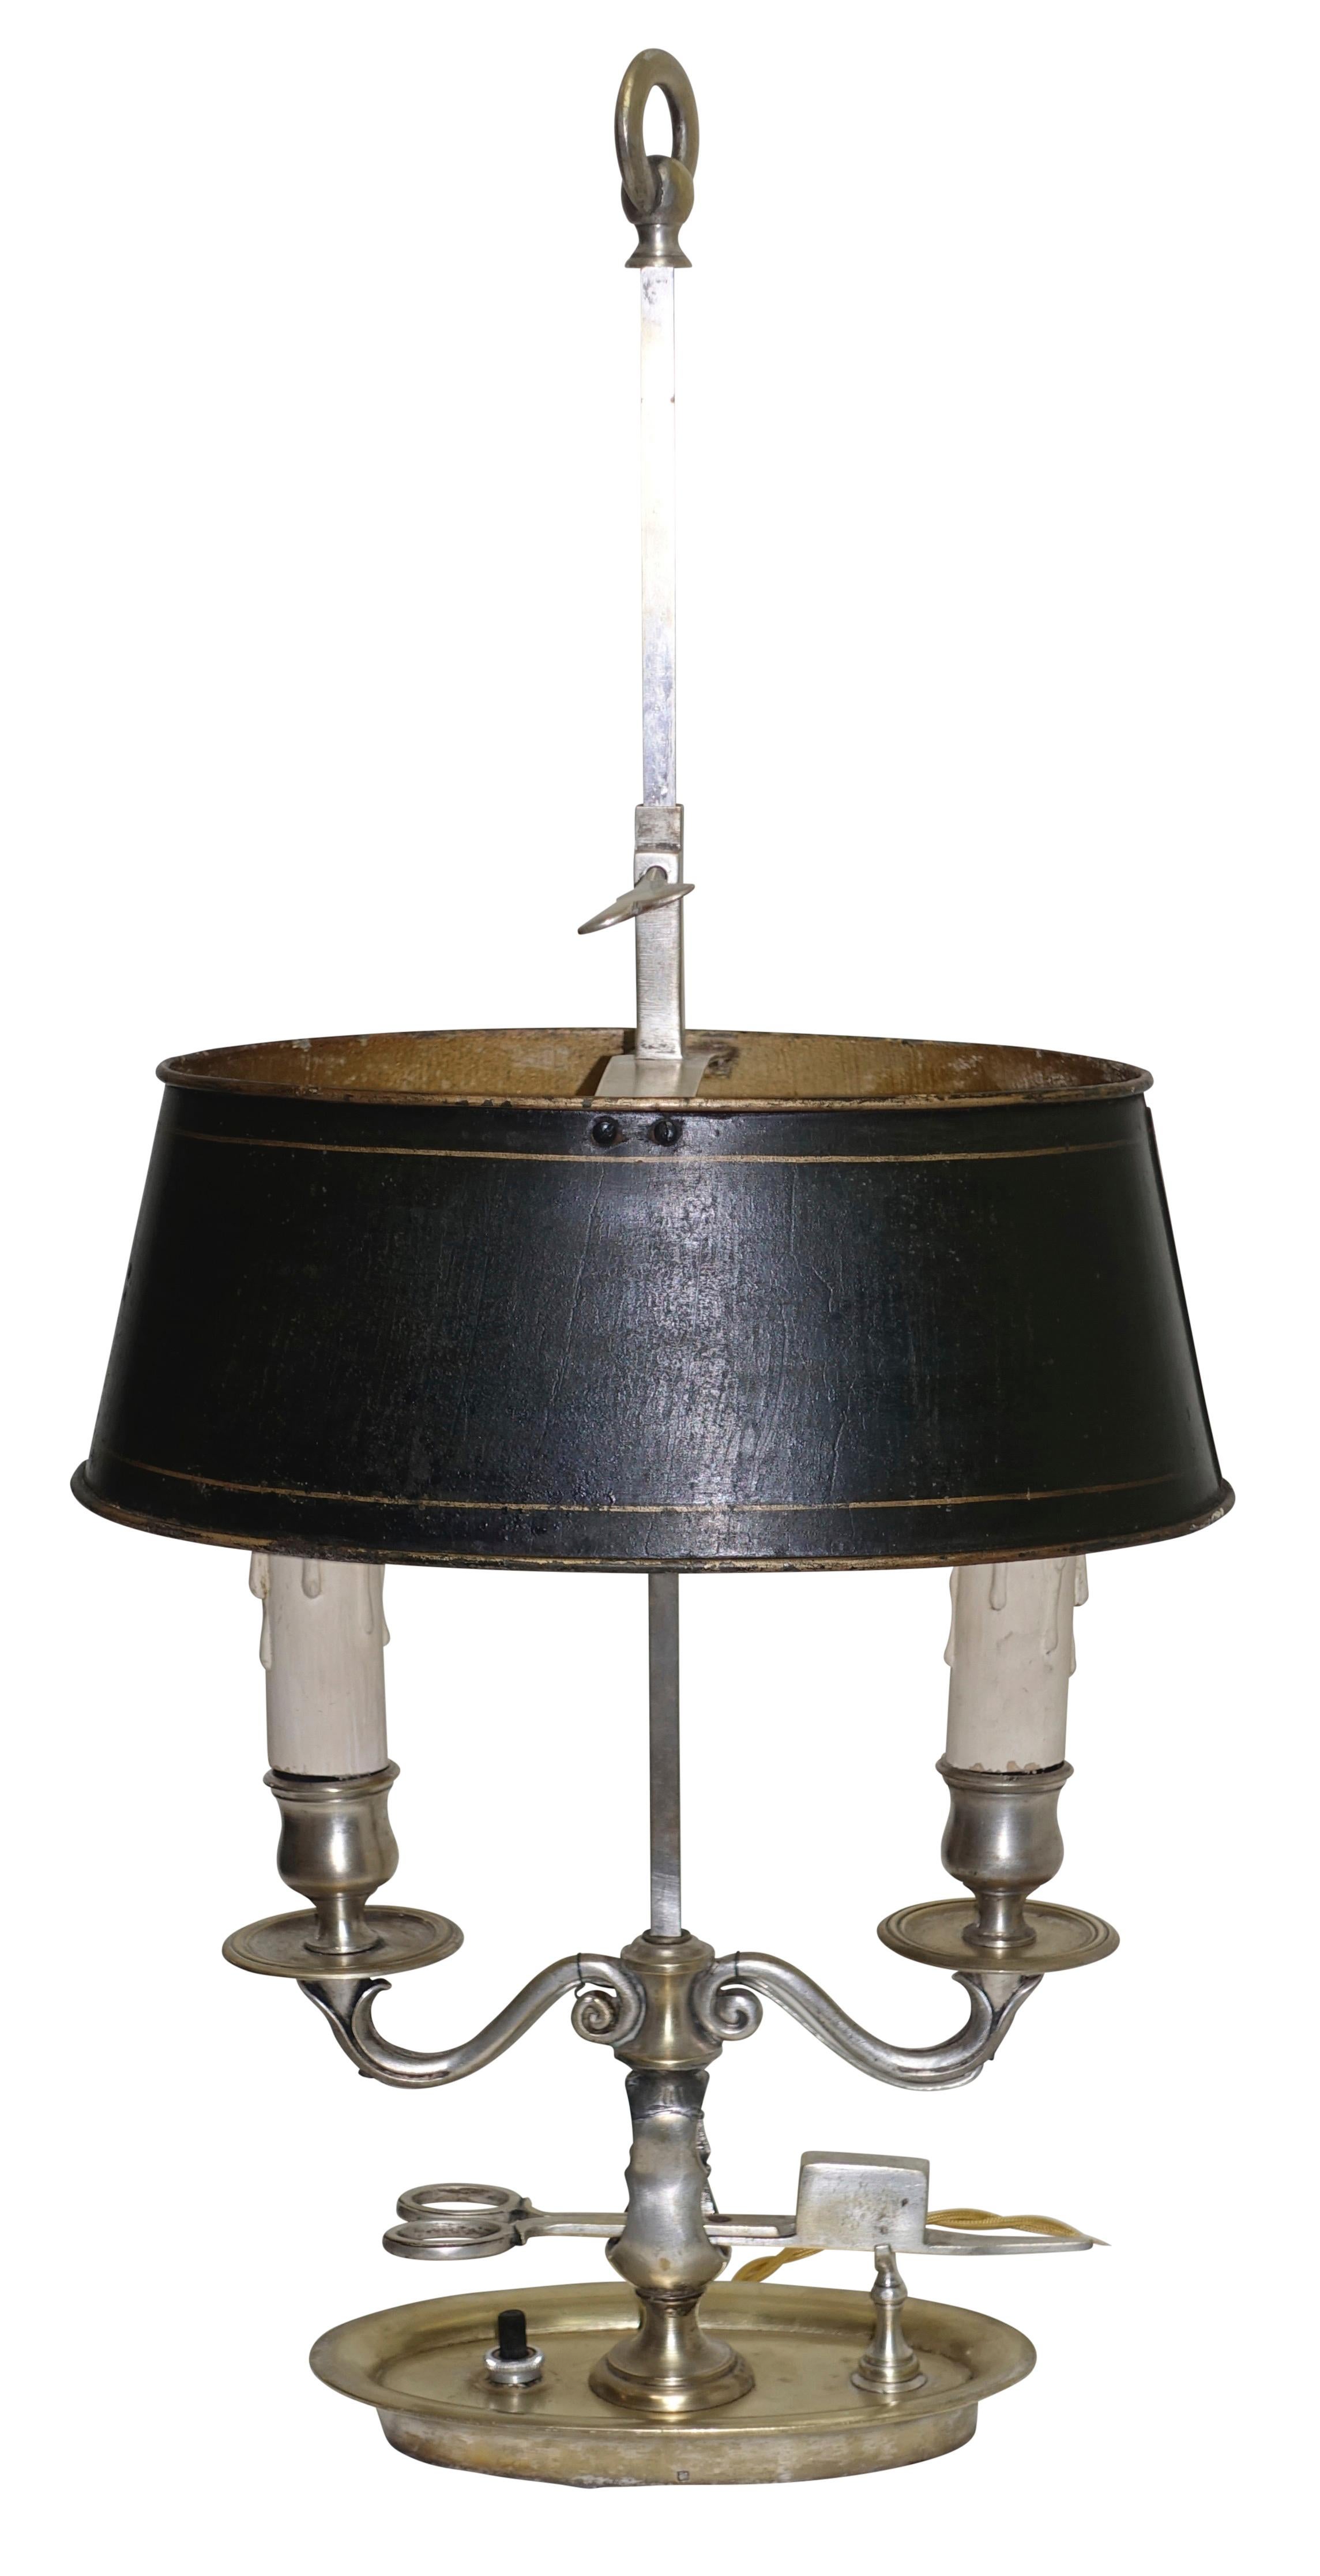 Ovale Bouillotte-Lampe aus Nickel und vernickeltem Messing aus der Empirezeit mit zwei Kerzen, jetzt elektrifiziert. Mit schwarz lackiertem, verstellbarem Schirm und ungewöhnlichem Dochthalter, Frankreich, frühes 19. Jahrhundert.